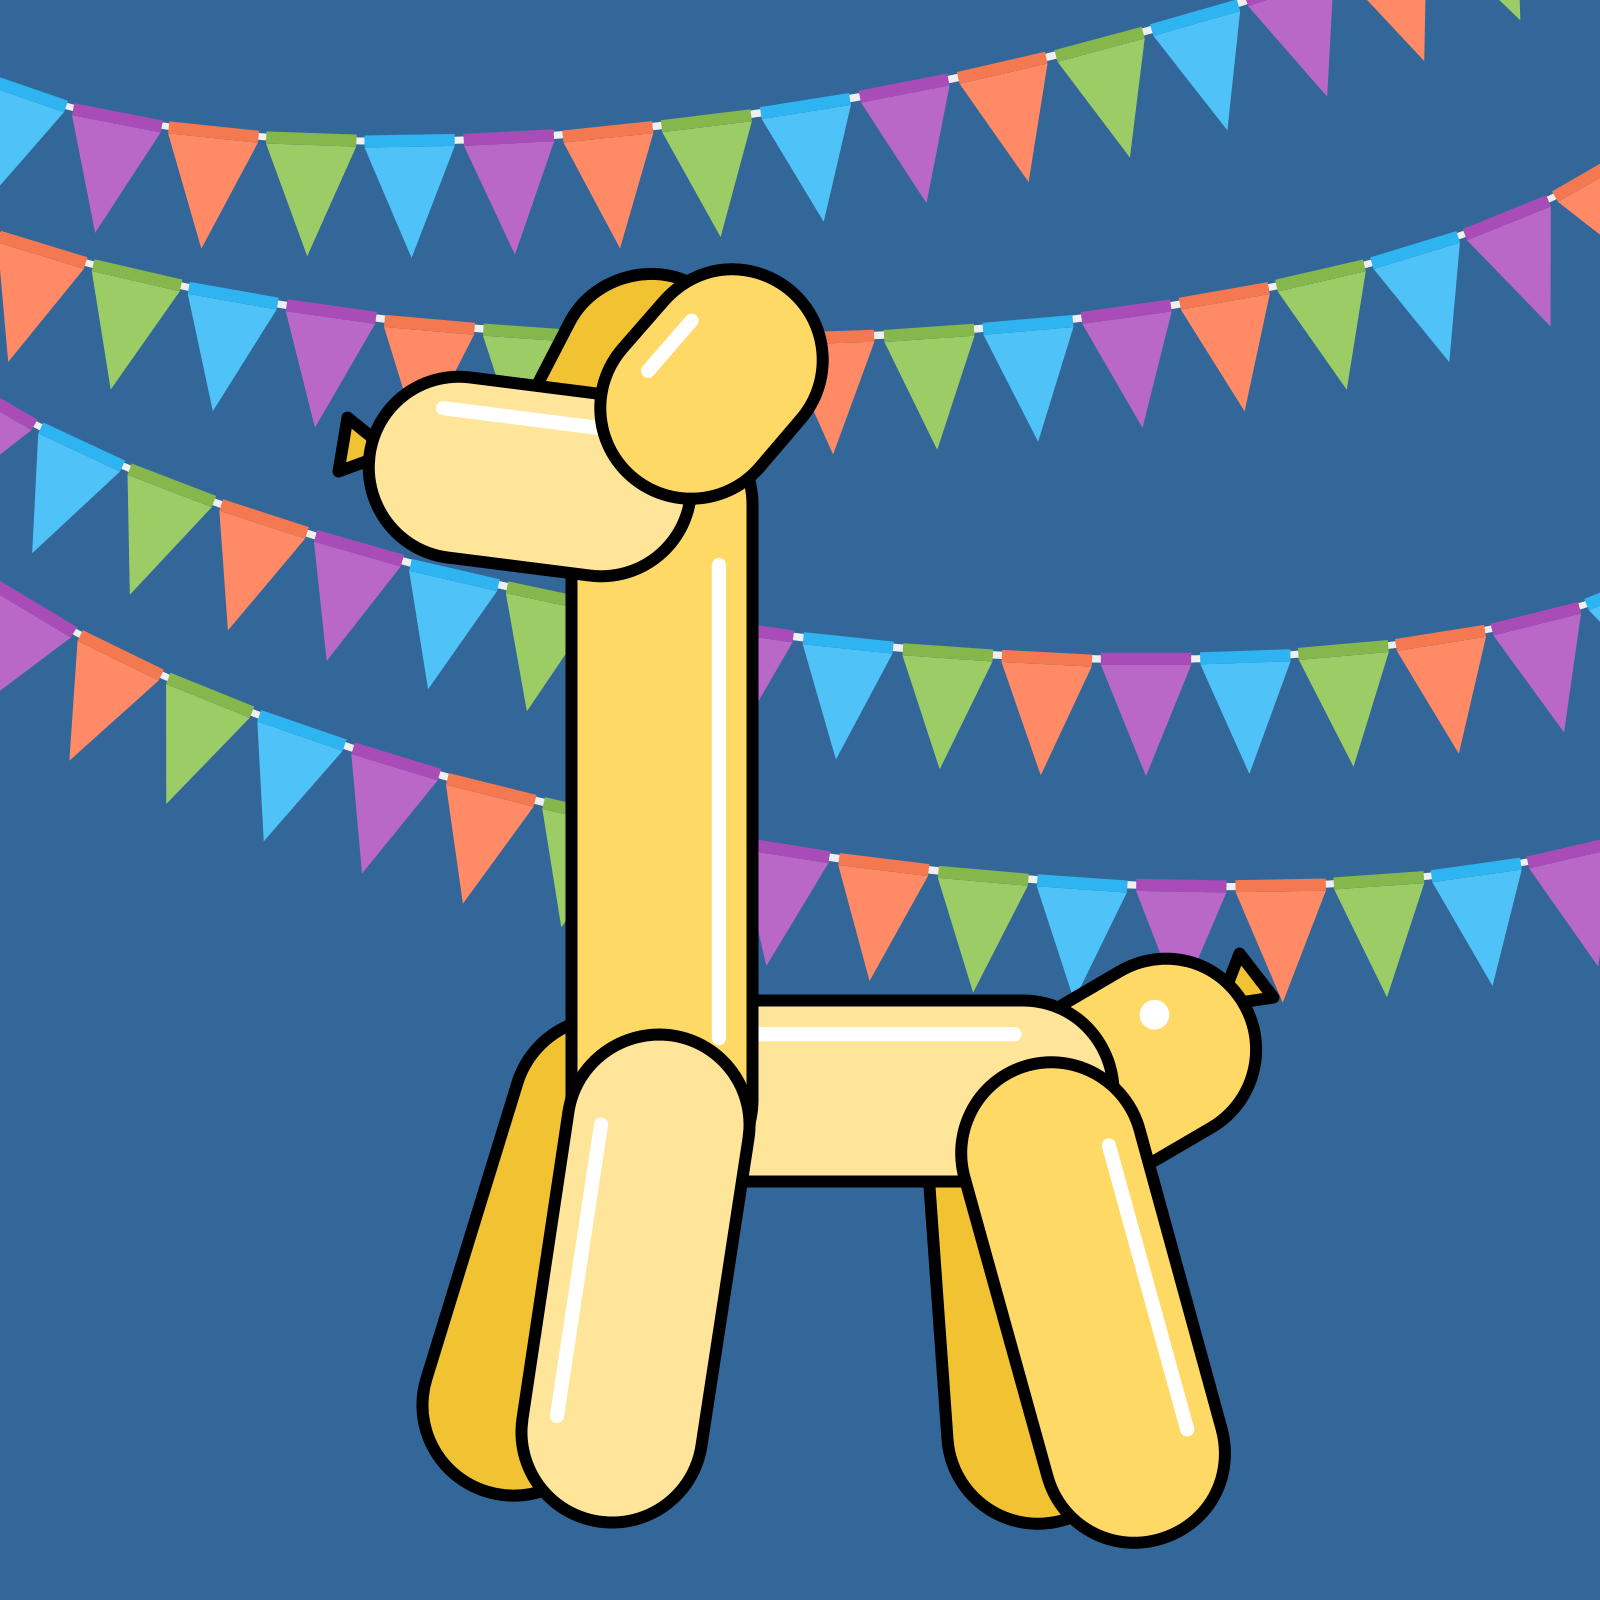 Drawing of a yellow giraffe balloon animal